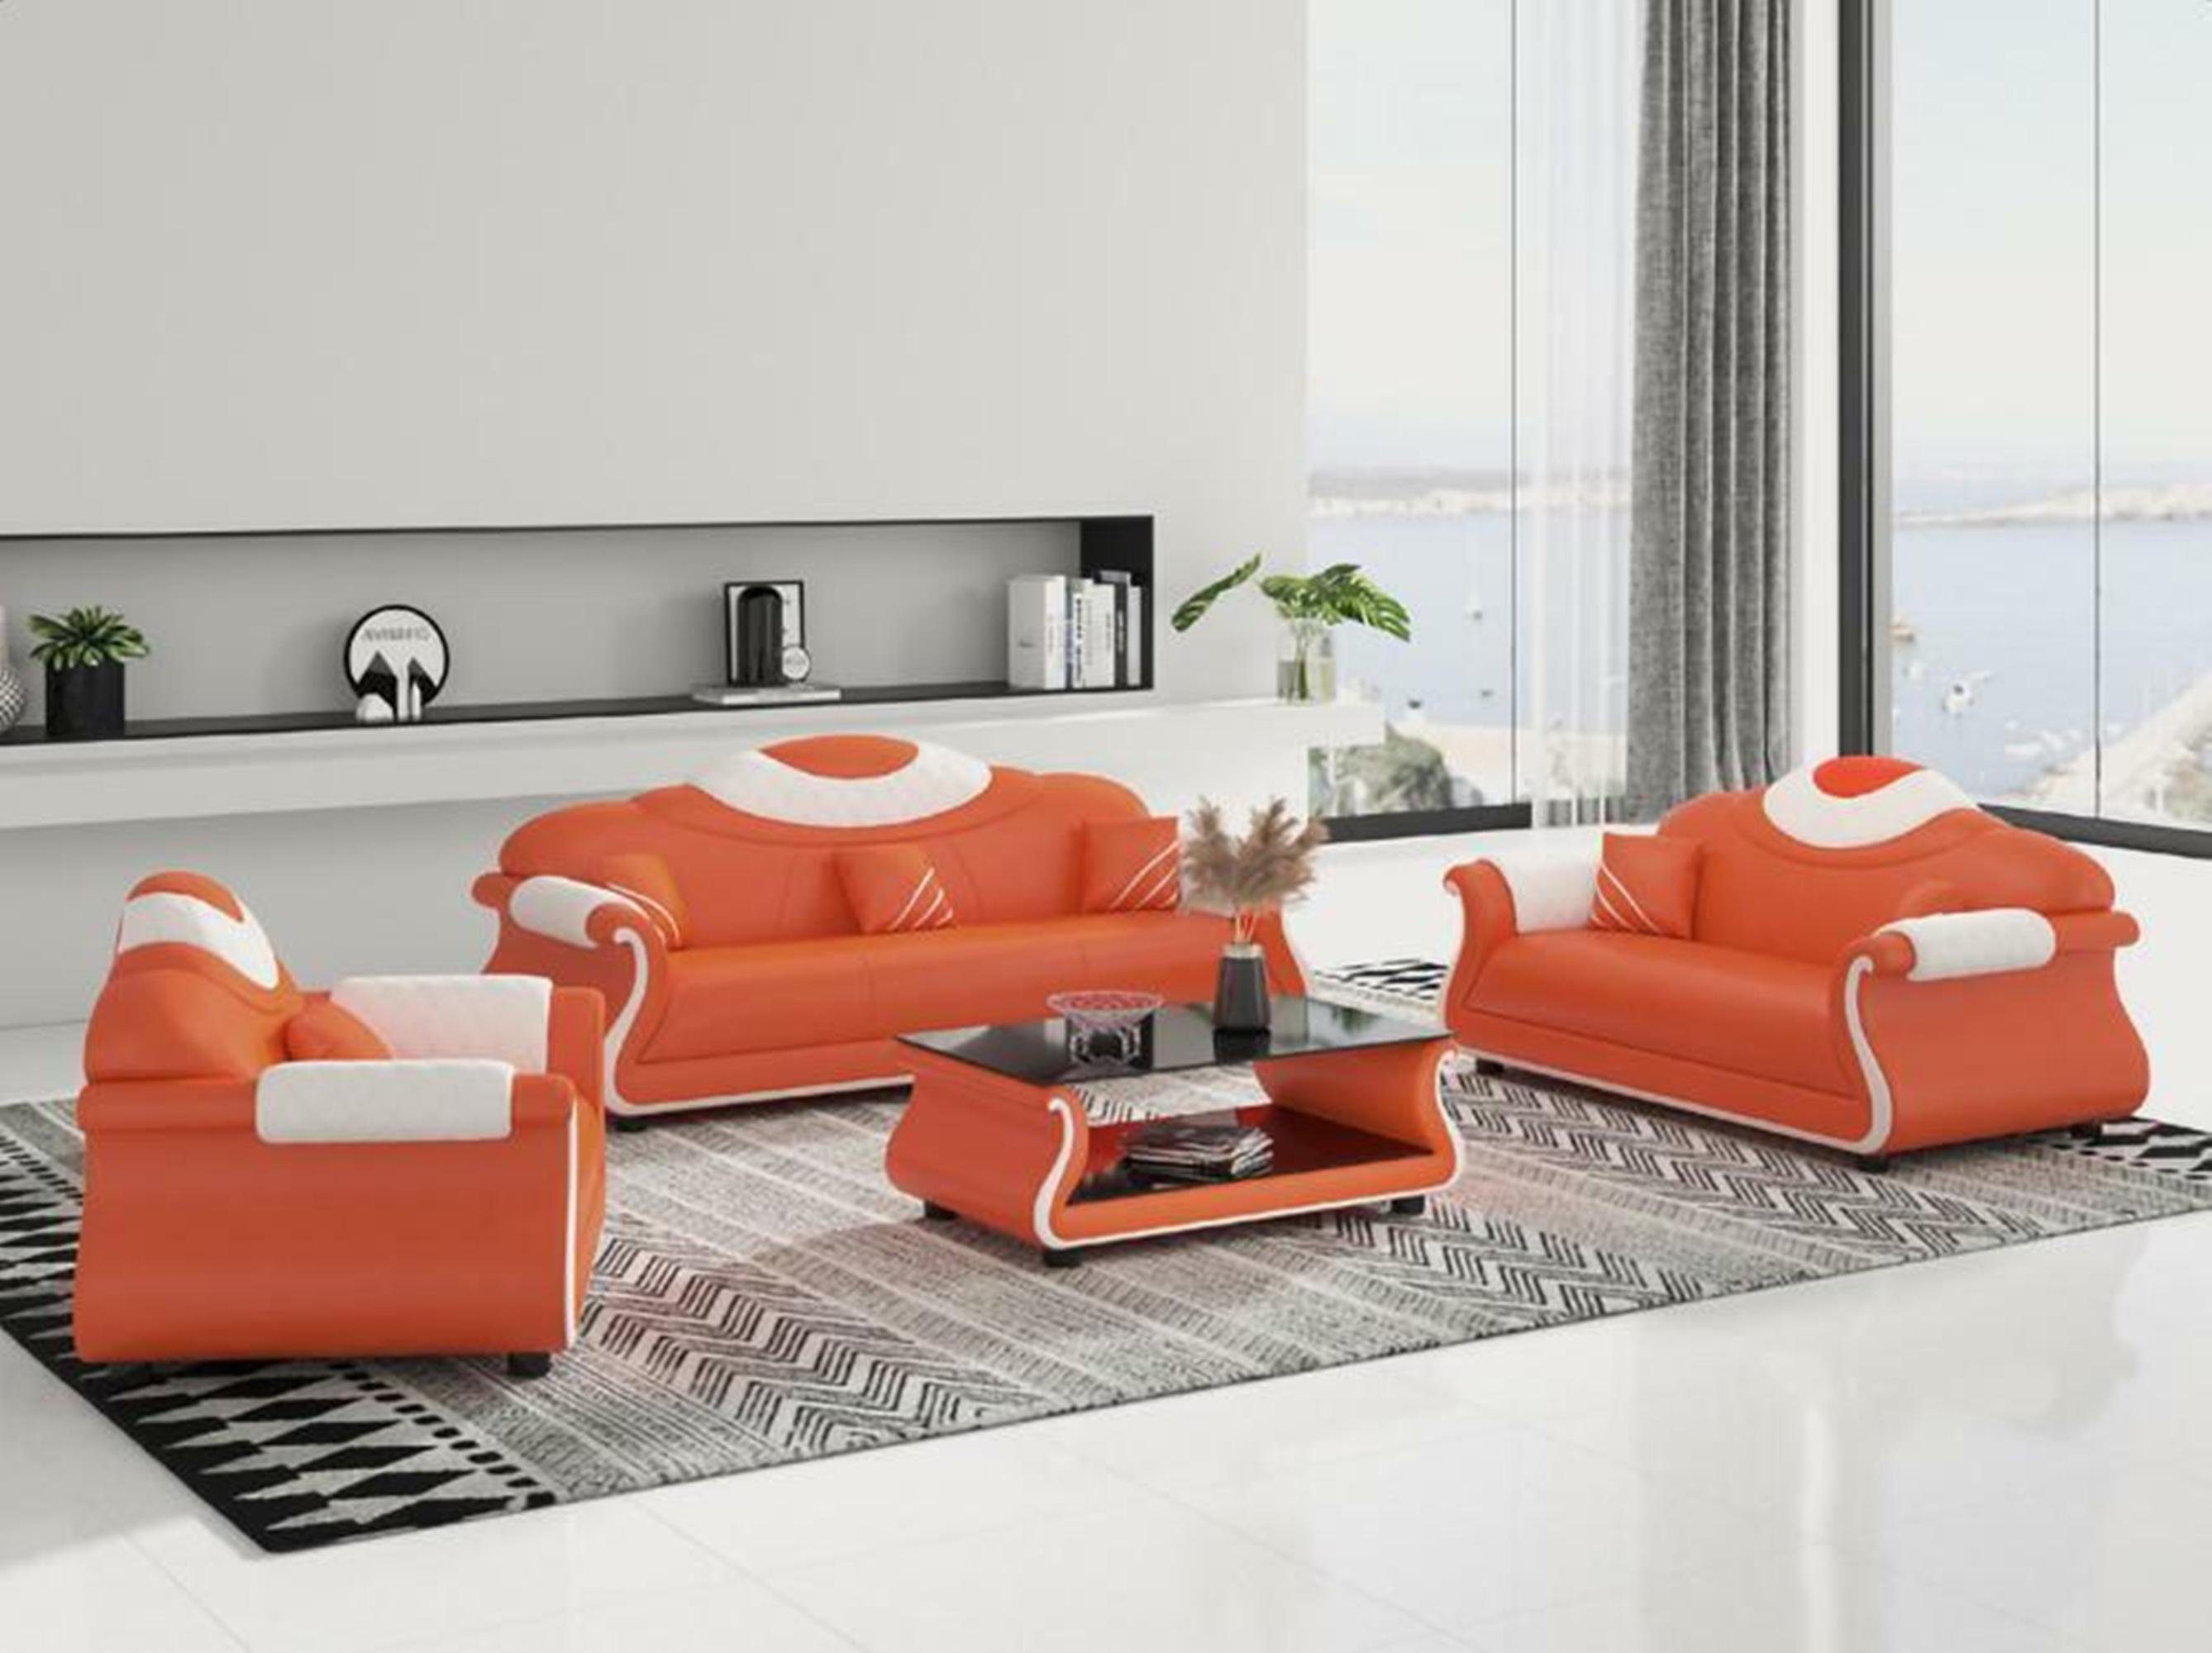 [Originalprodukt aus Übersee] JVmoebel Wohnzimmer-Set + neu Couch 3+2+1 Sofa Luxus Orange/Weiß Holz Polster Sitzer Möbel Couchtisch